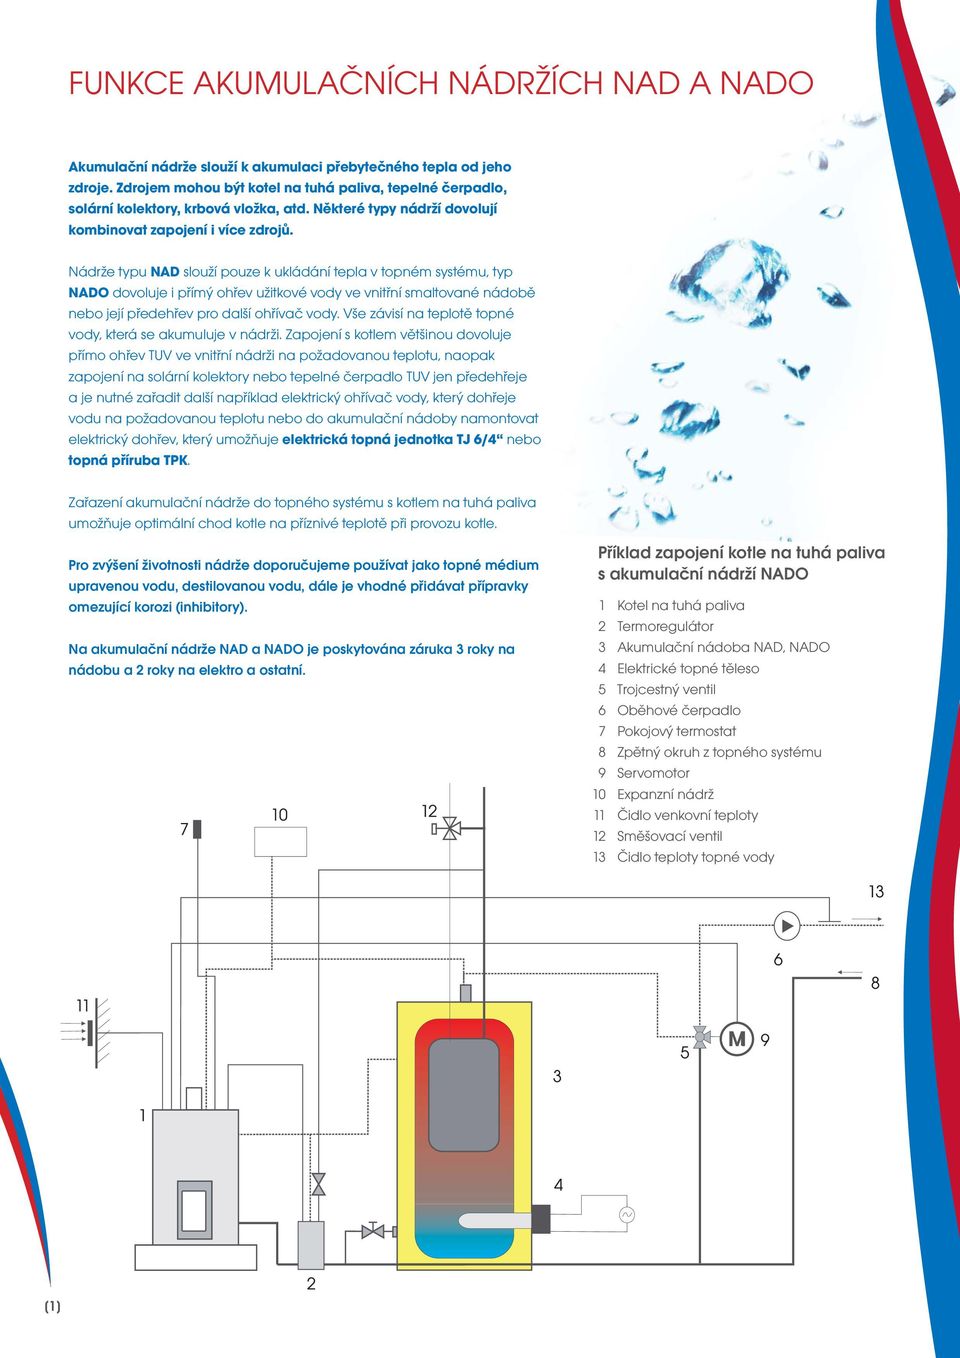 Nádrže typu NAD slouží pouze k ukládání tepla v topném systému, typ NADO dovoluje i přímý ohřev užitkové vody ve vnitřní smaltované nádobě nebo její předehřev pro další ohřívač vody.